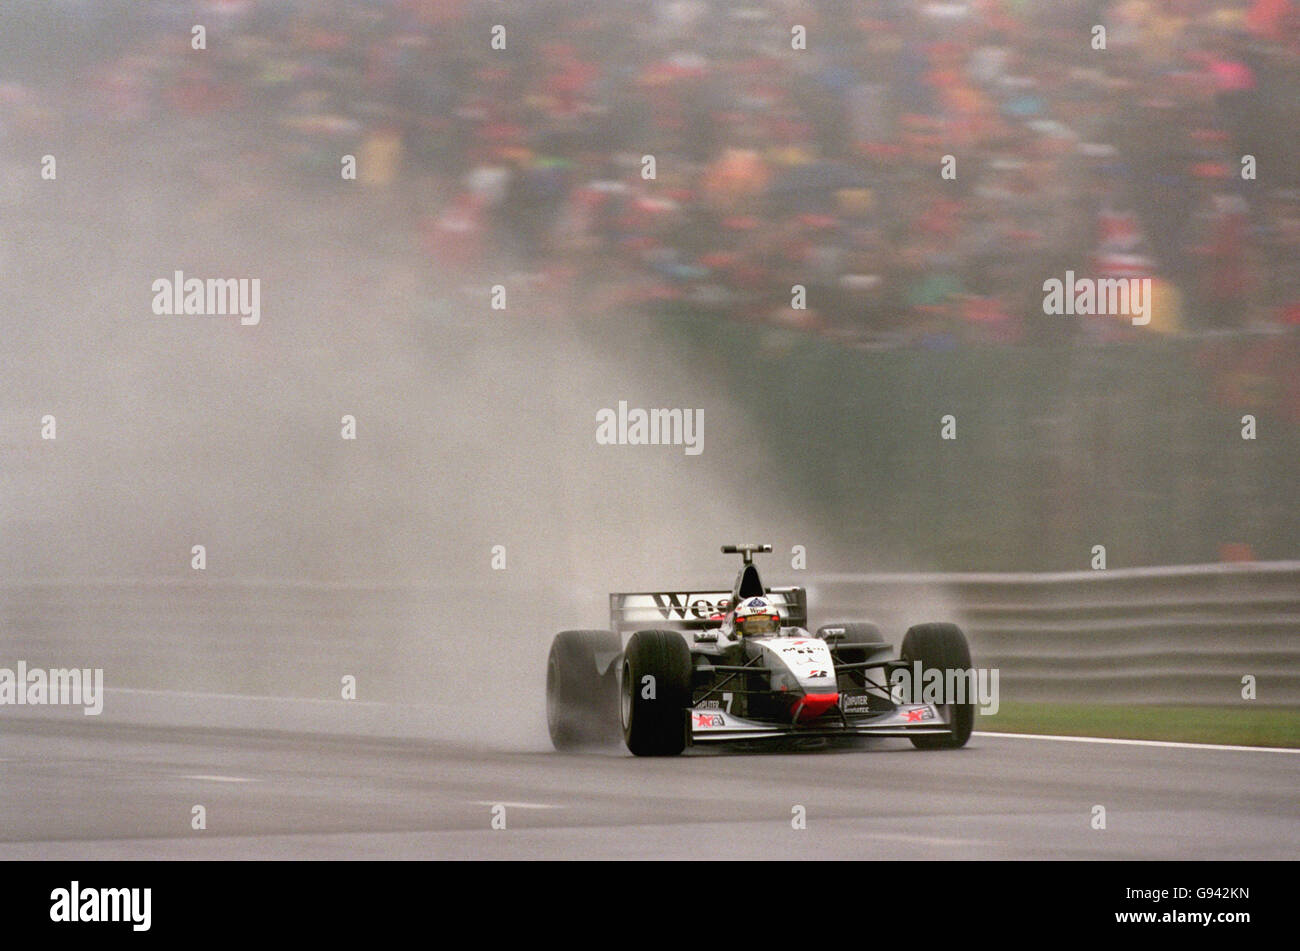 Formel-1-Motorsport - Großer Preis Von Belgien. David Coulthard schickt eine Wolke von Spray, während er durch den Regen fährt Stockfoto